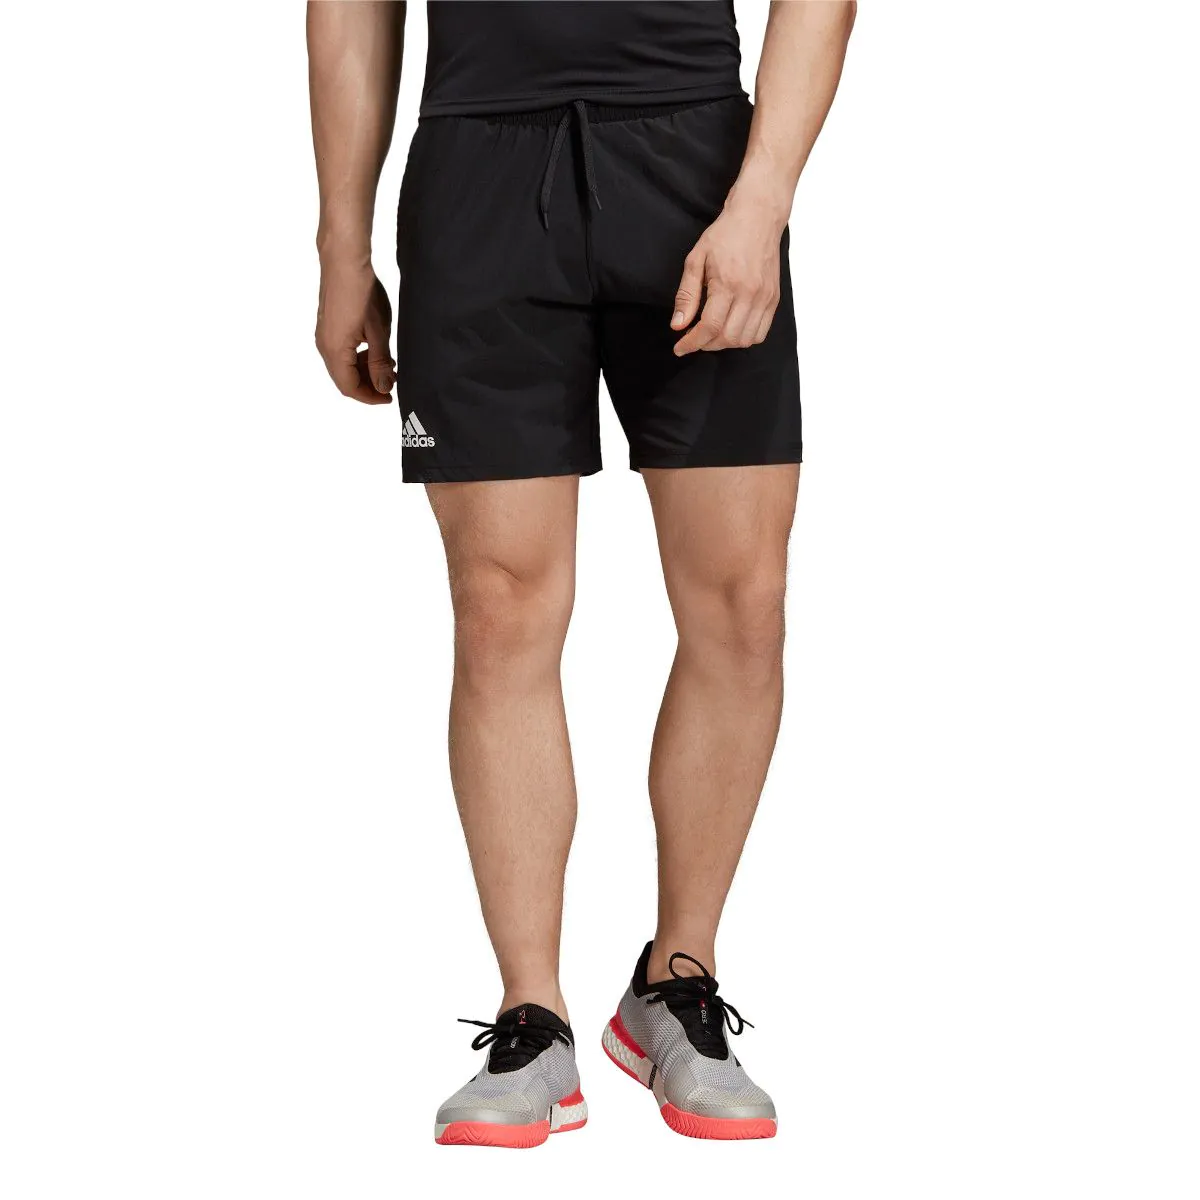 Adidas Club SW short. Шорты adidas Melbourne Tennis Ergo Printed. Adidas 7 inch Tennis shorts. Шорты адидас Club. Short club